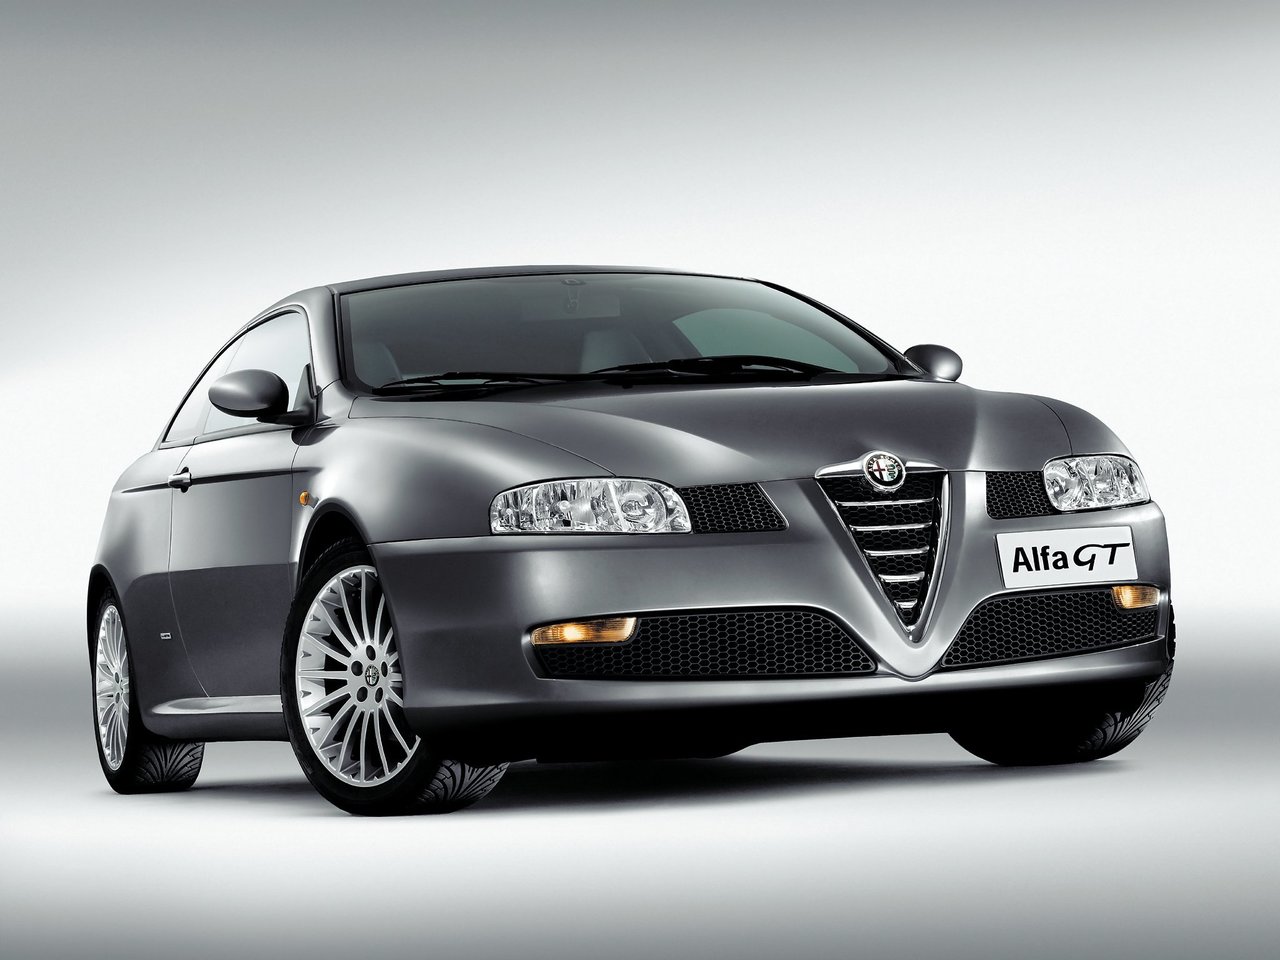 Снижаем расход Alfa Romeo GT на топливо, устанавливаем ГБО